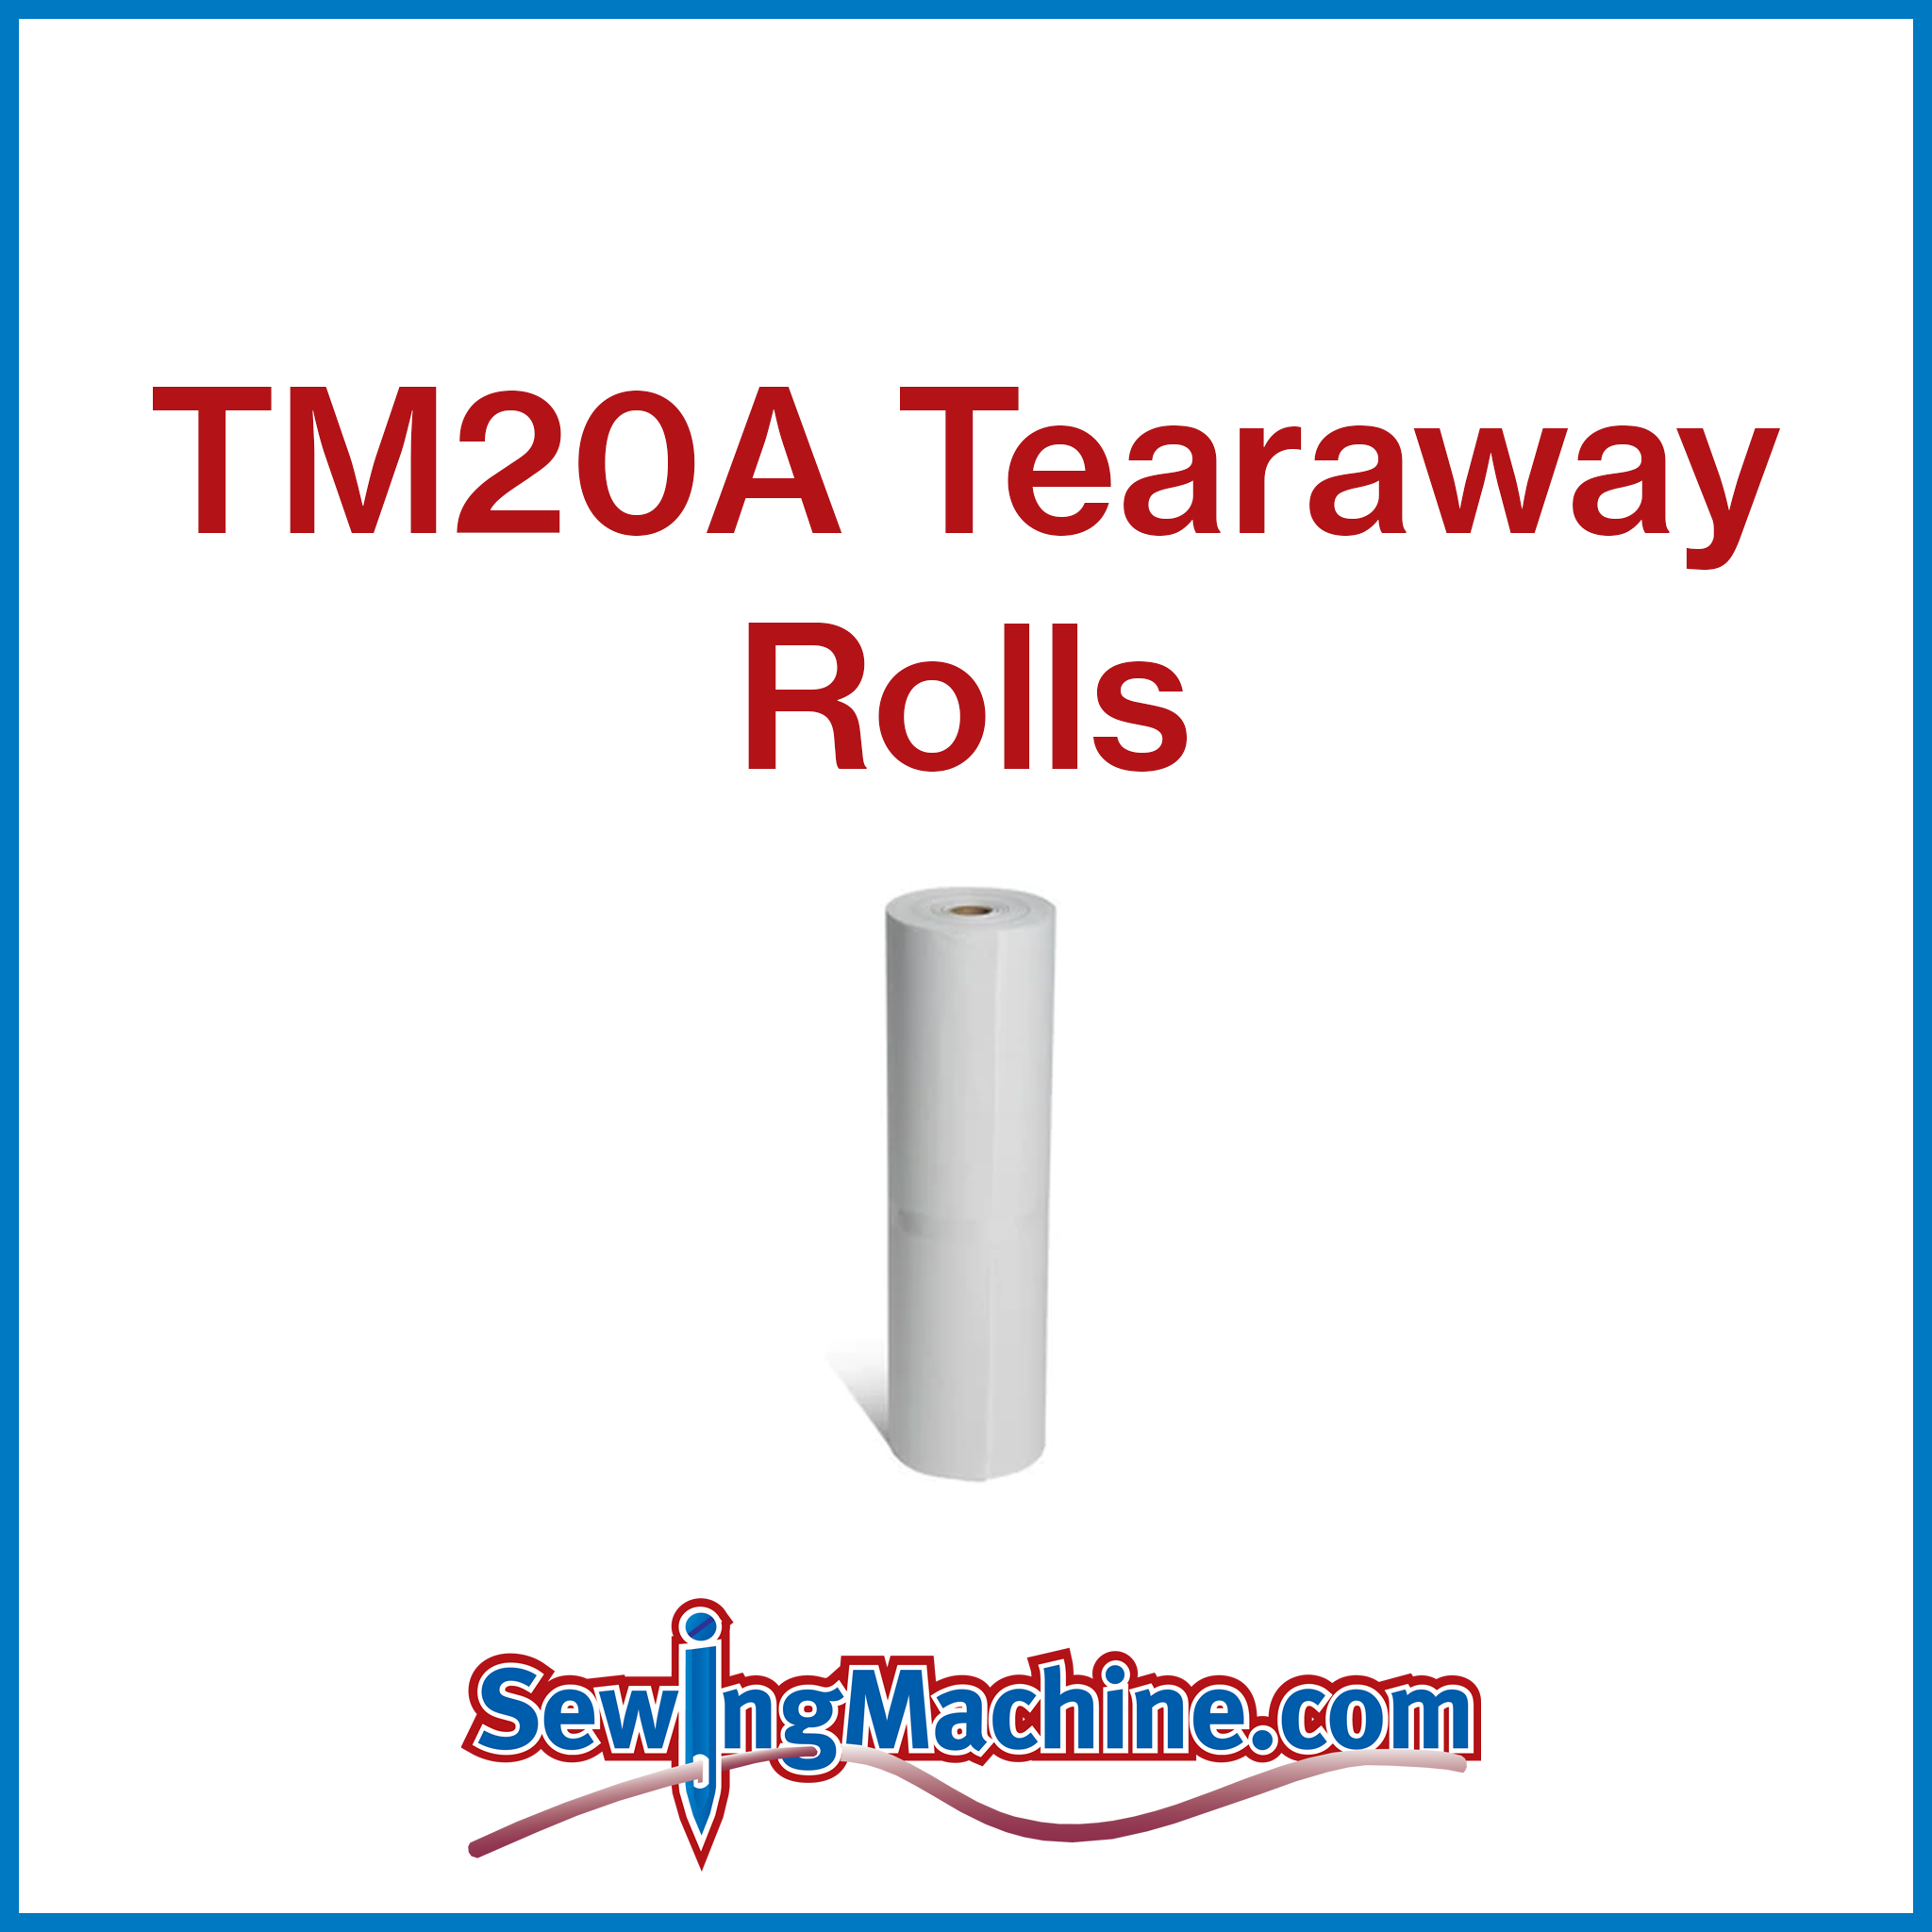 TM20A Tearaway 2oz Rolls